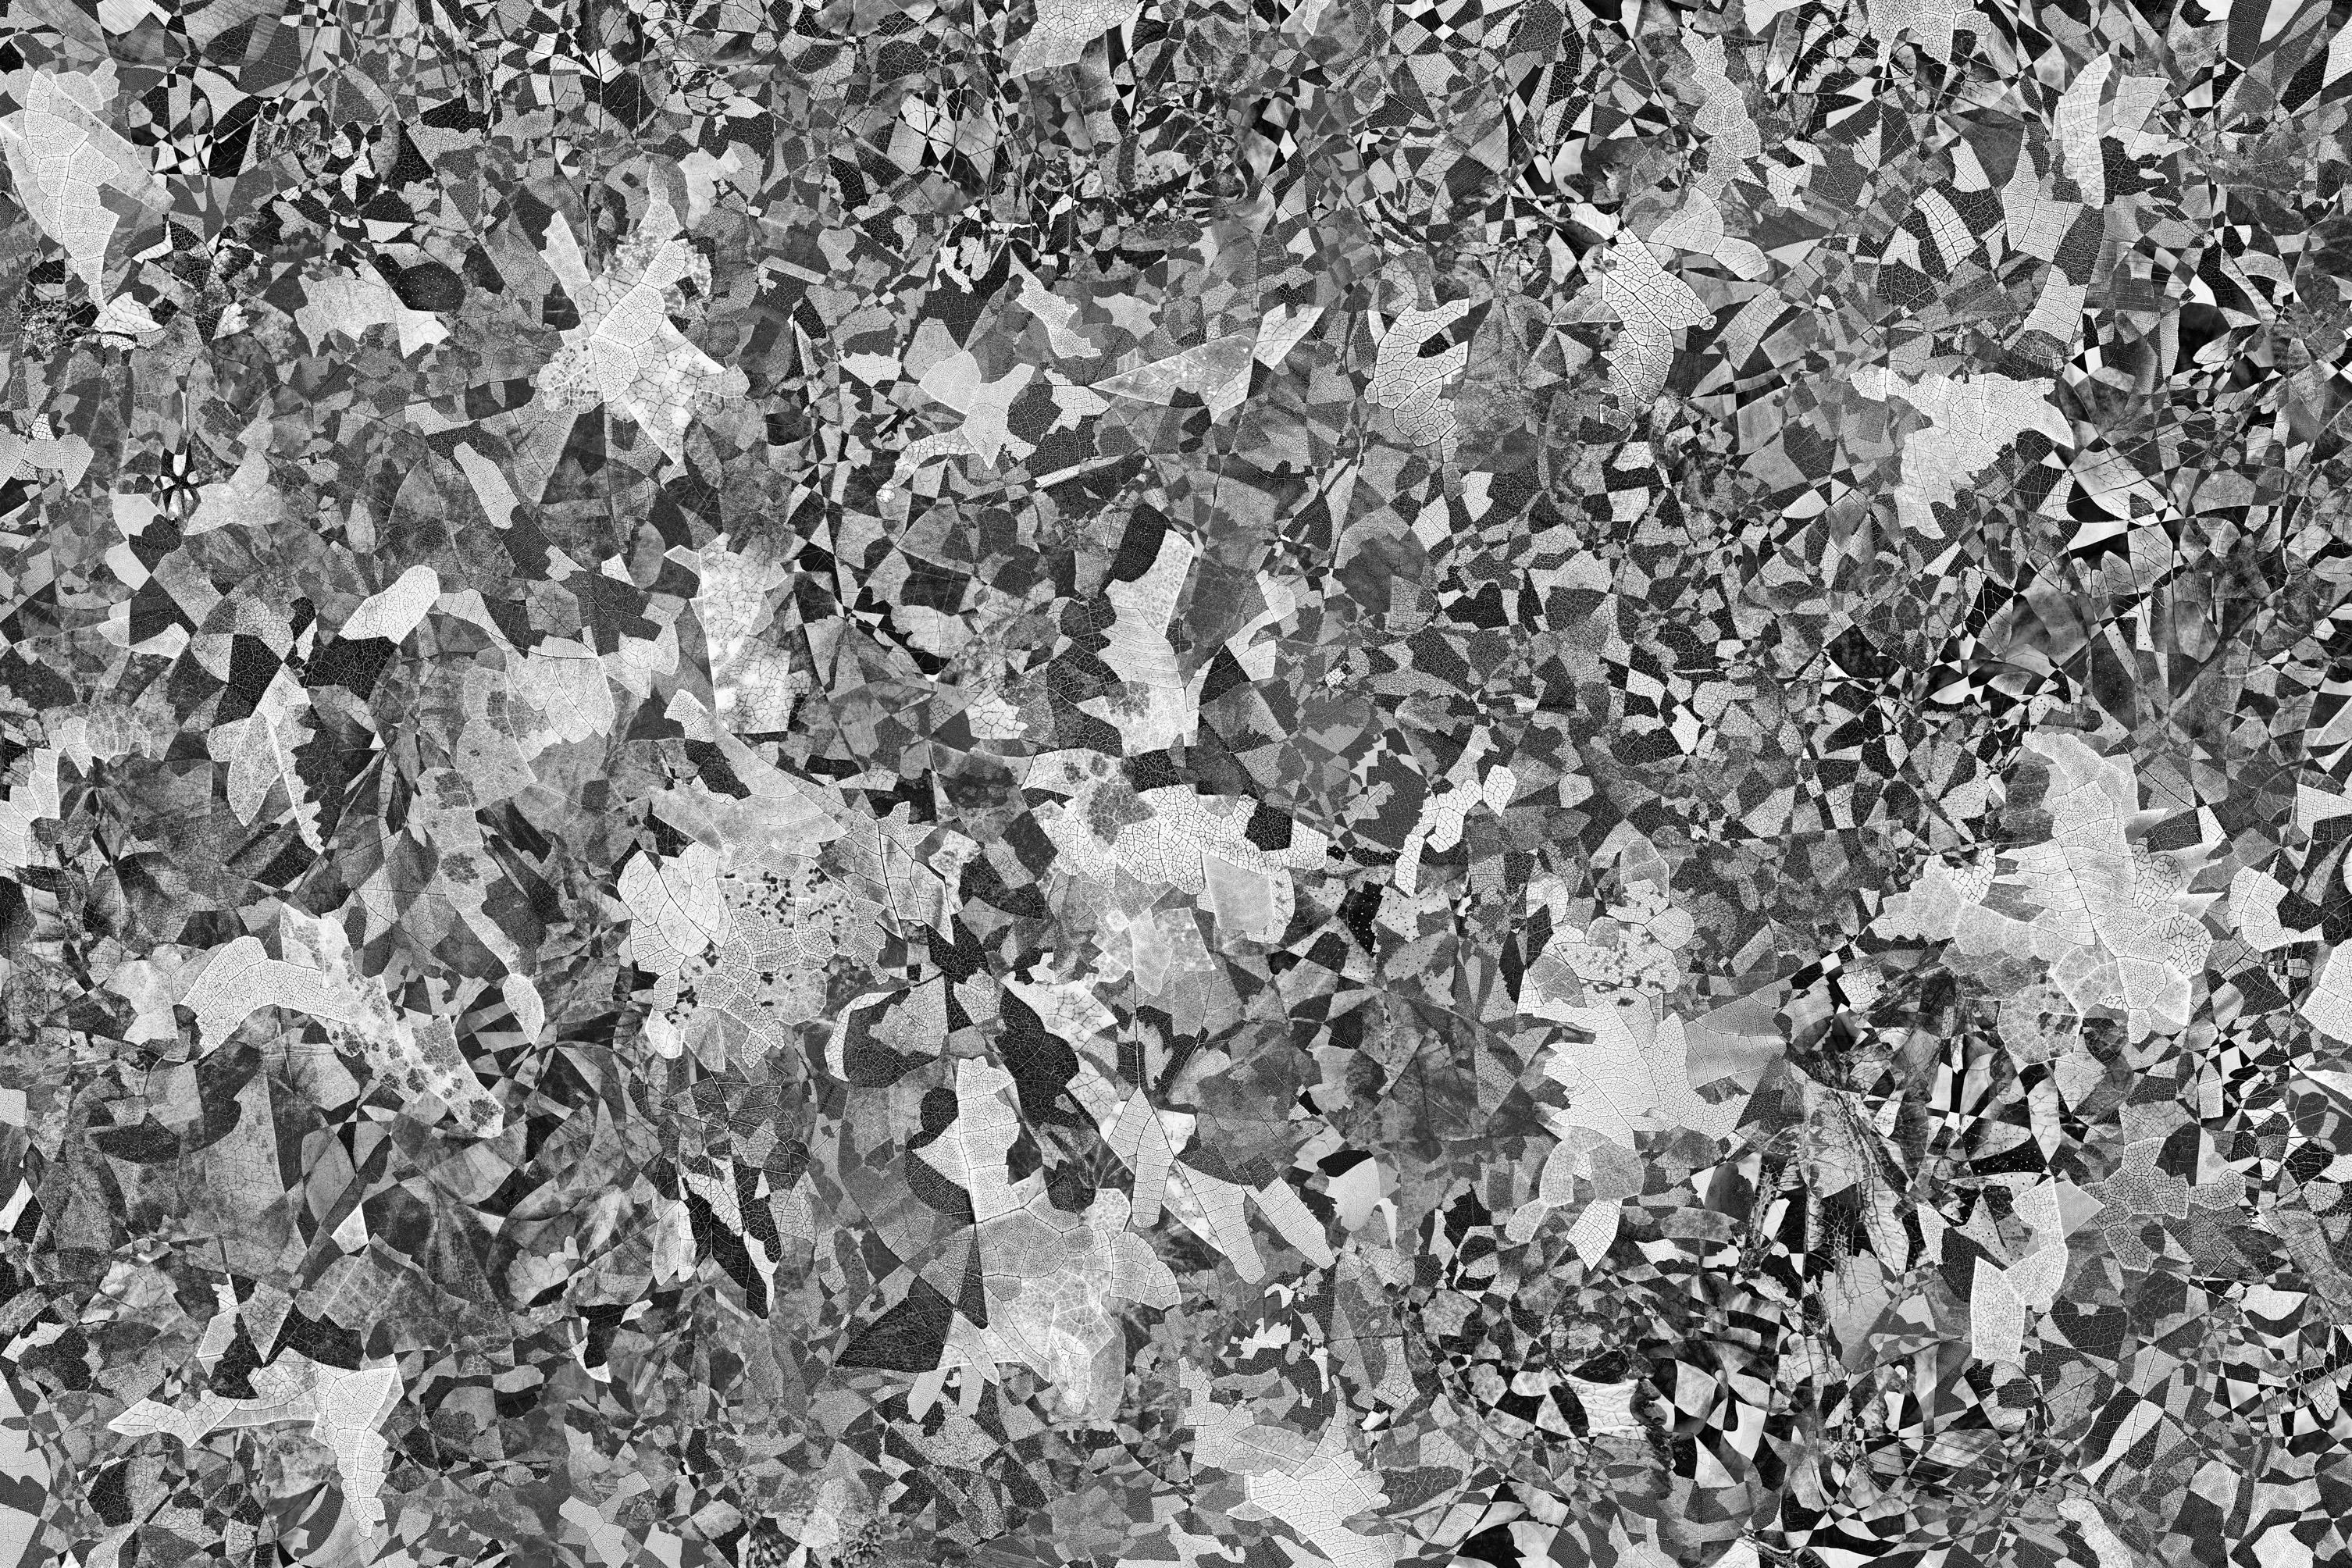 Hubert Blanz
Feldforschung 05 - Zeitgenössische abstrakte Diamant-Textur-Fotografie
Auflage 2/3 + 1 AP
Schwarzer und weißer Fotodruck
130 x 190 cm
Der Druck ist ungerahmt und wird mit einem vom Künstler signierten Aufkleber geliefert.

Nachdem er